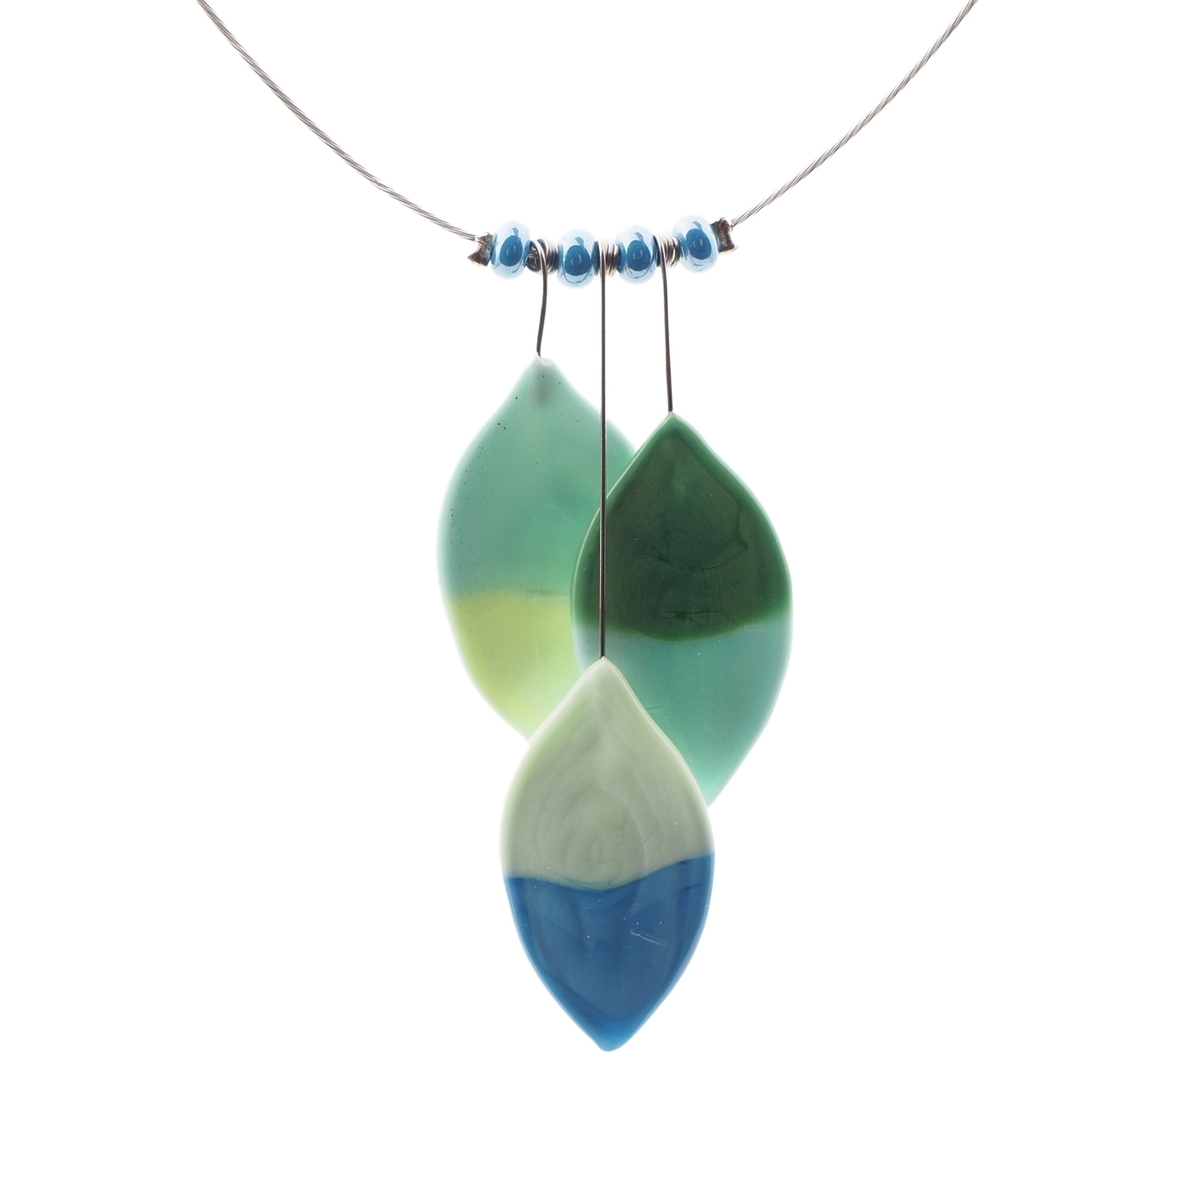 Czech lampwork bicolor uranium leaf glass bead necklace